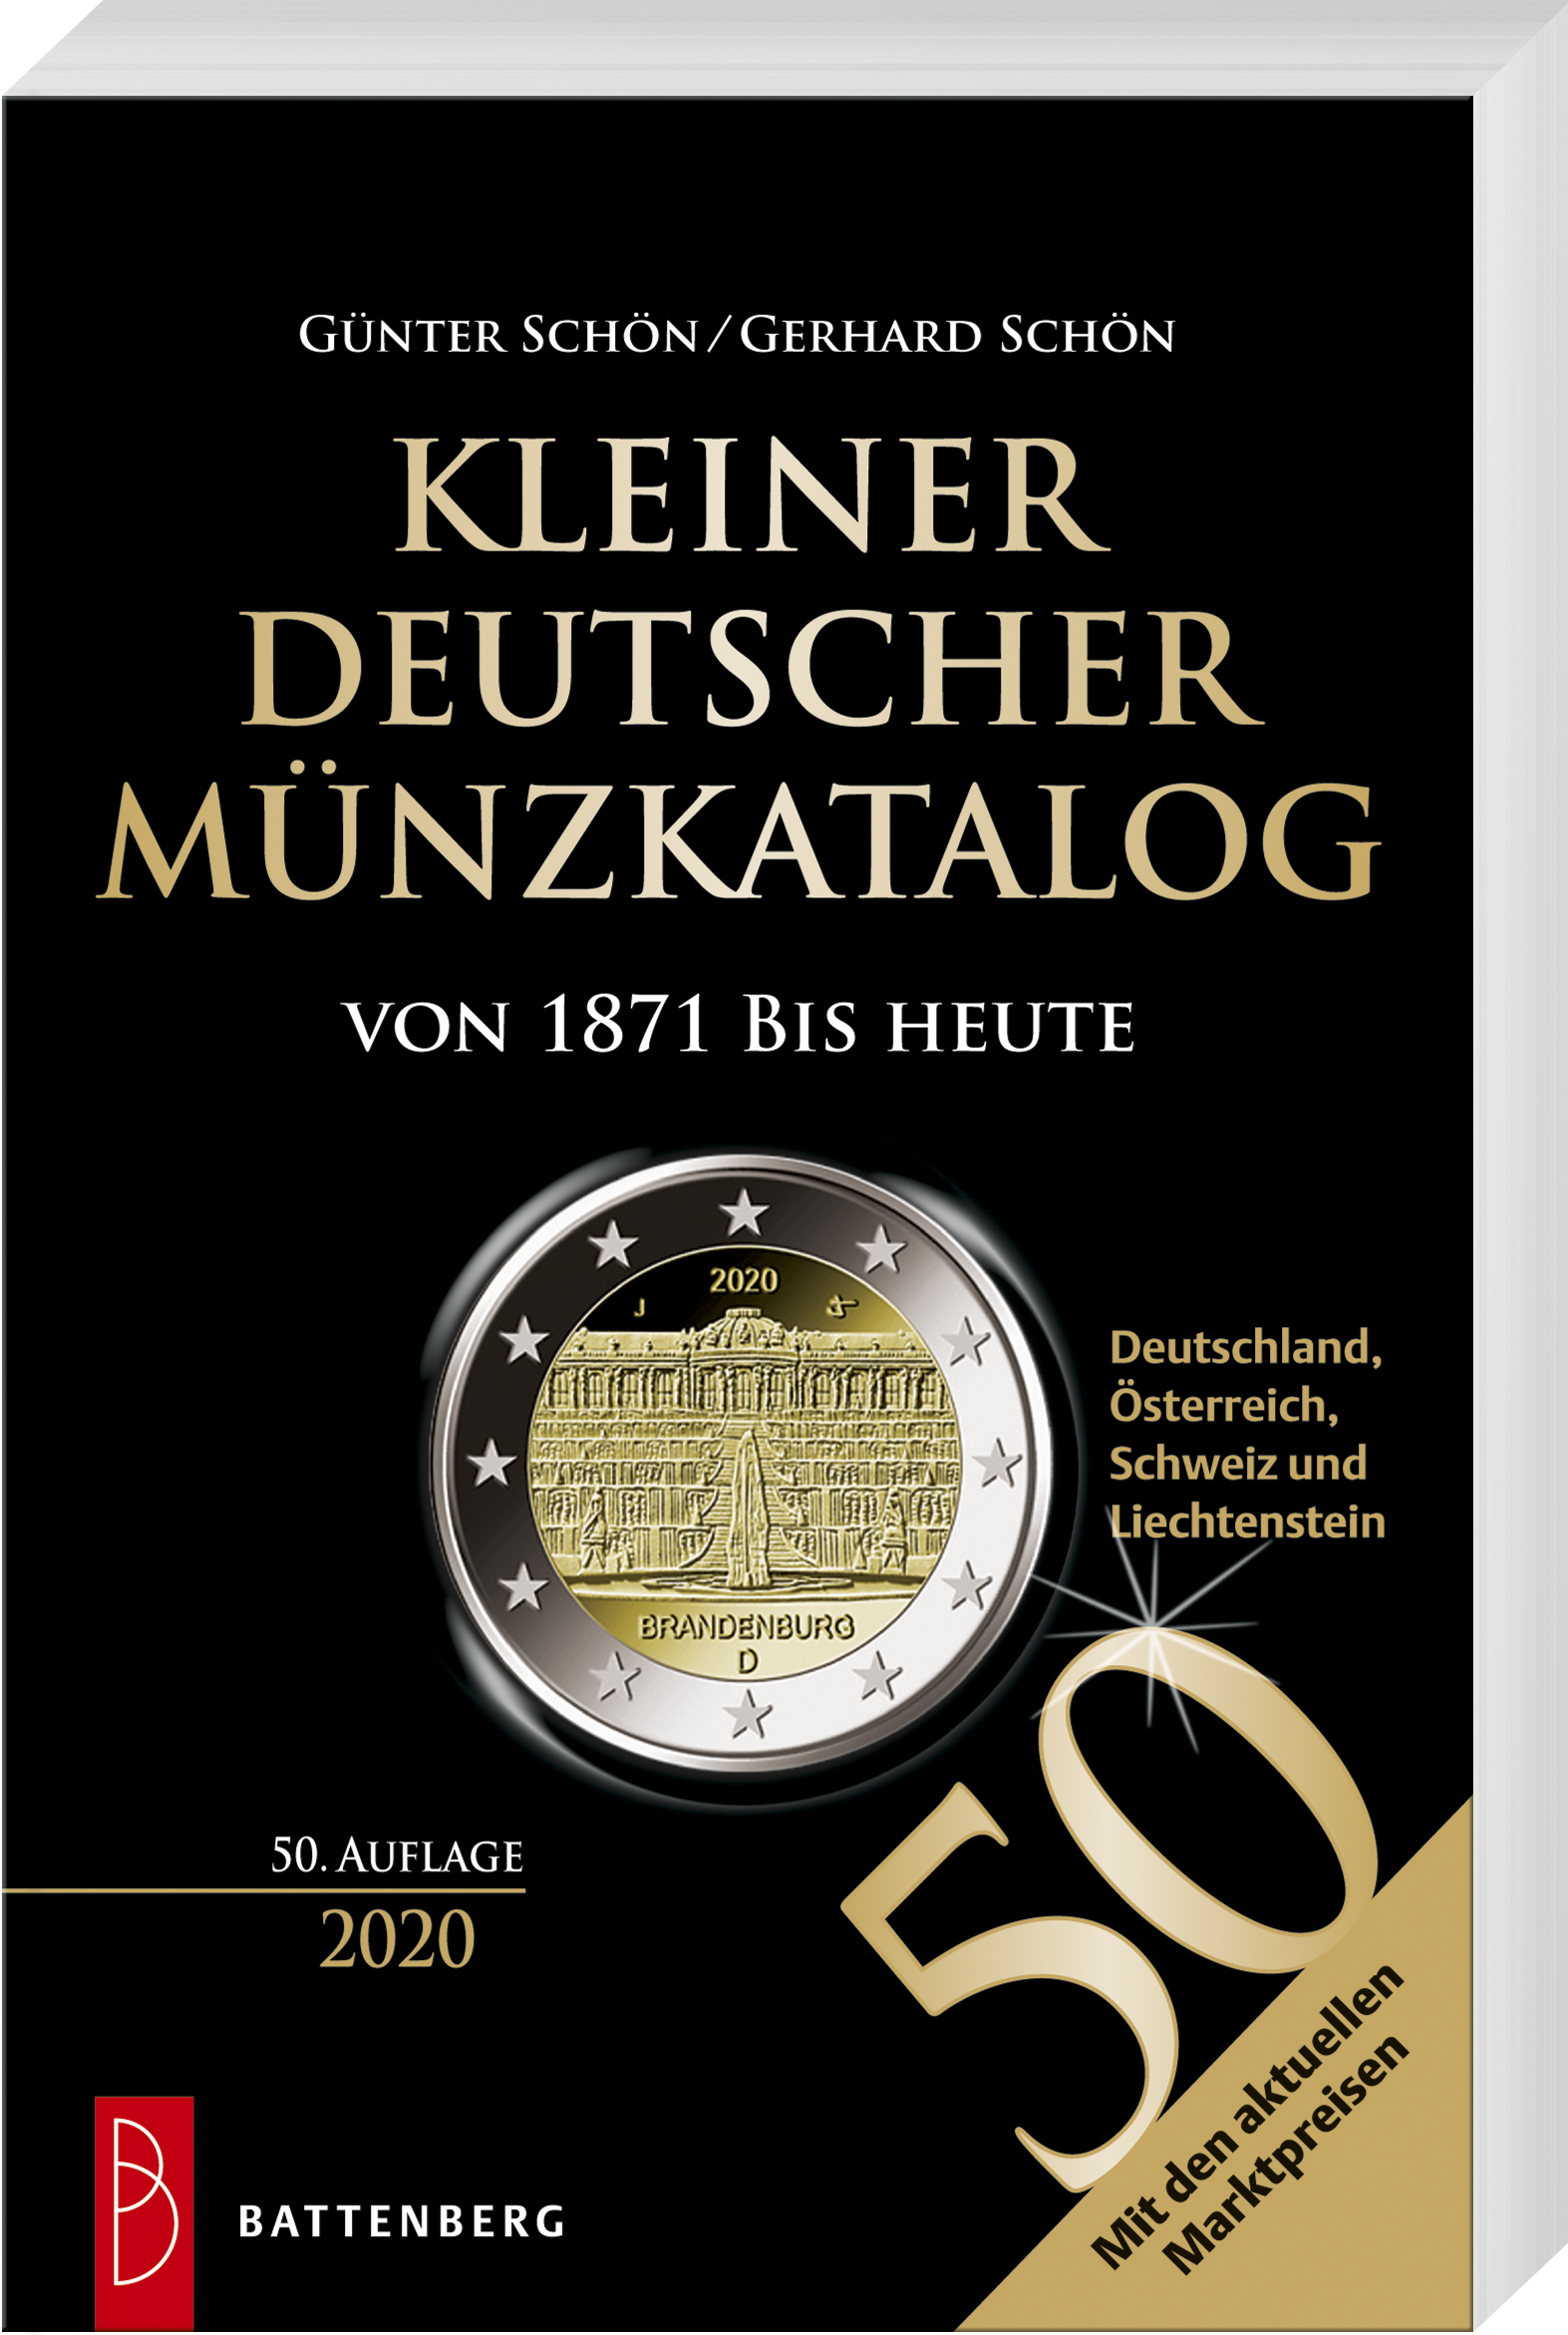 Kleiner deutscher Münzkatalog von 1871 bis heute